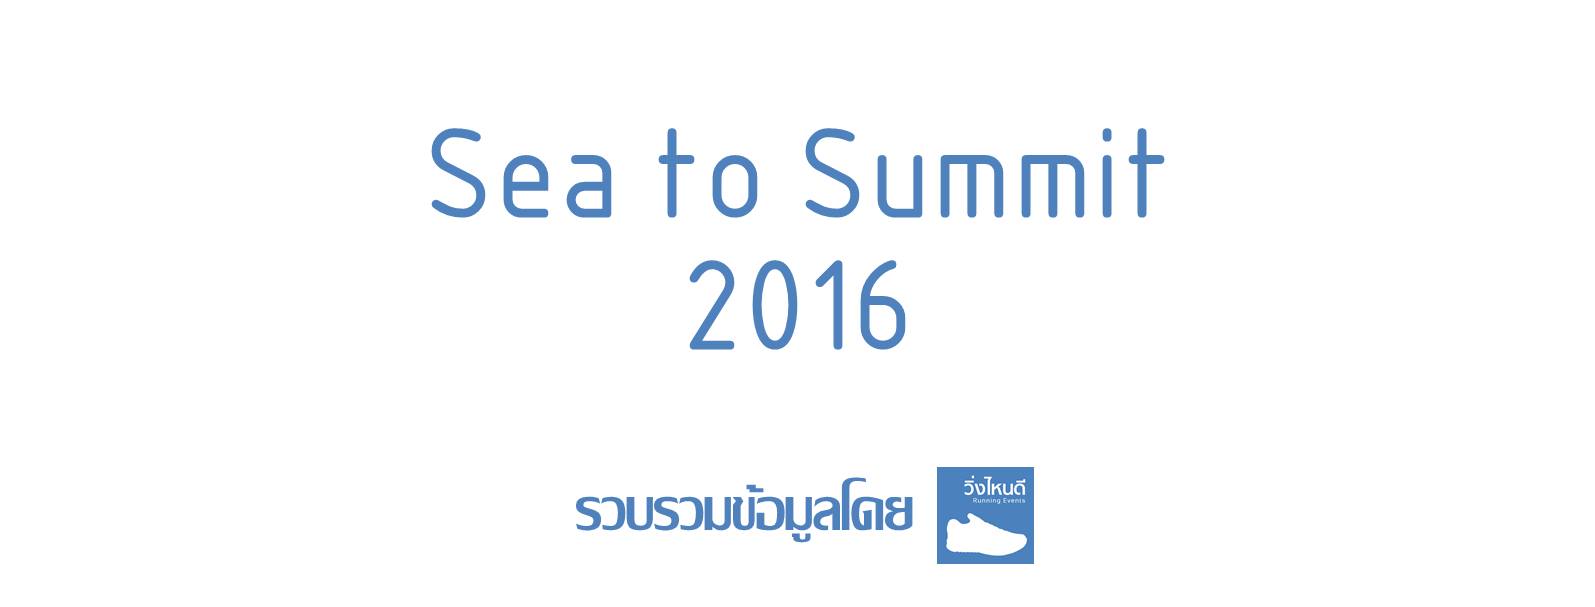 Sea to Summit 2016